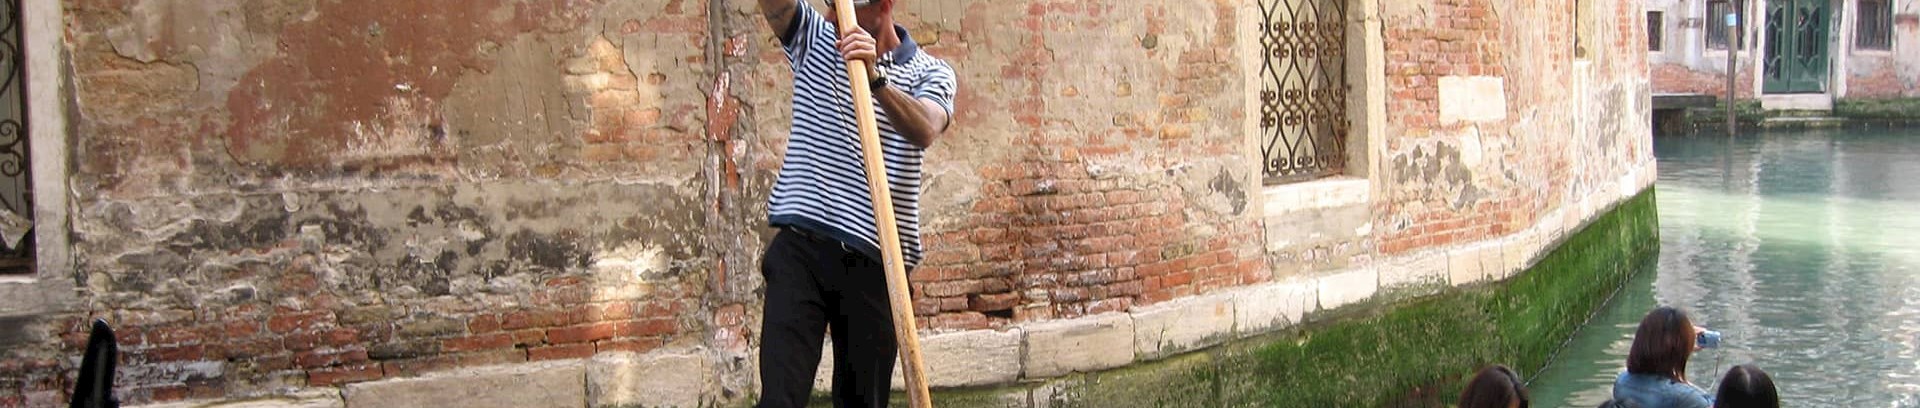 Billede af gondol i Venedig